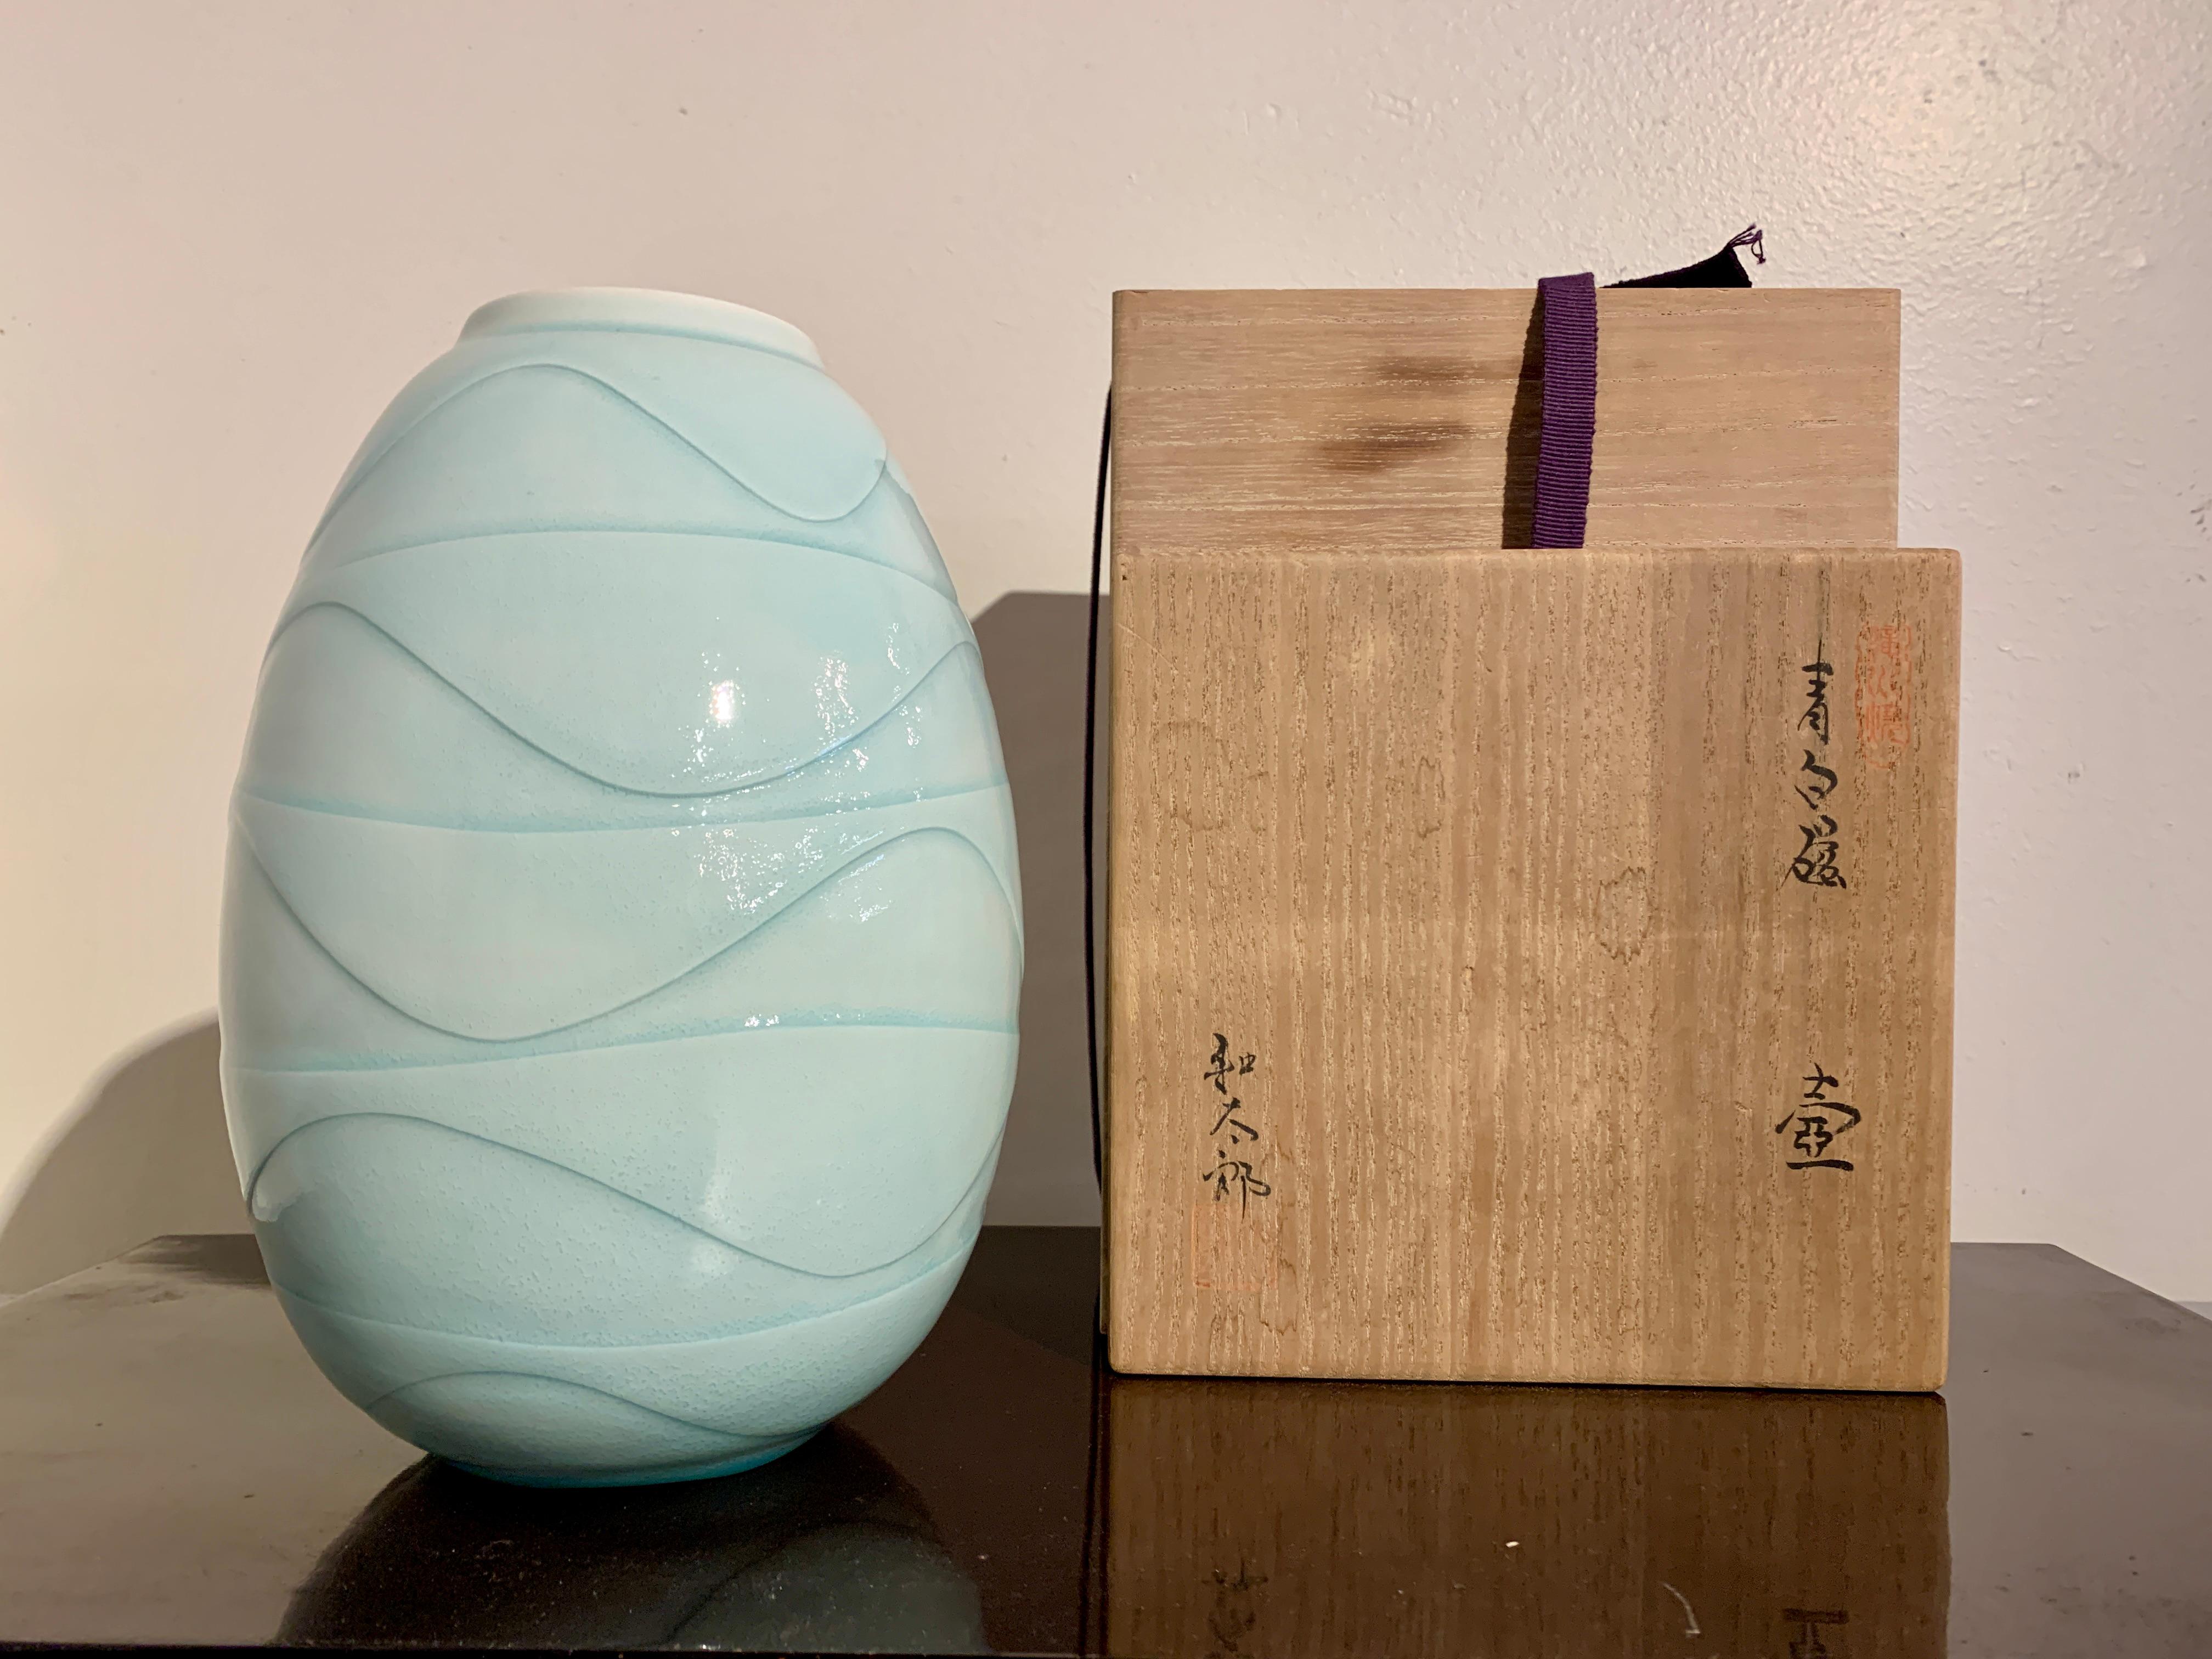 Un vase subtil et finement empoté en glaçure seihakuji par le céramiste contemporain japonais Ono Kotaro (né en 1953), vers 2000. 

Ono Kotaro est connu pour son équilibre entre mouvement et tension dans ses œuvres. La dureté de la porcelaine est